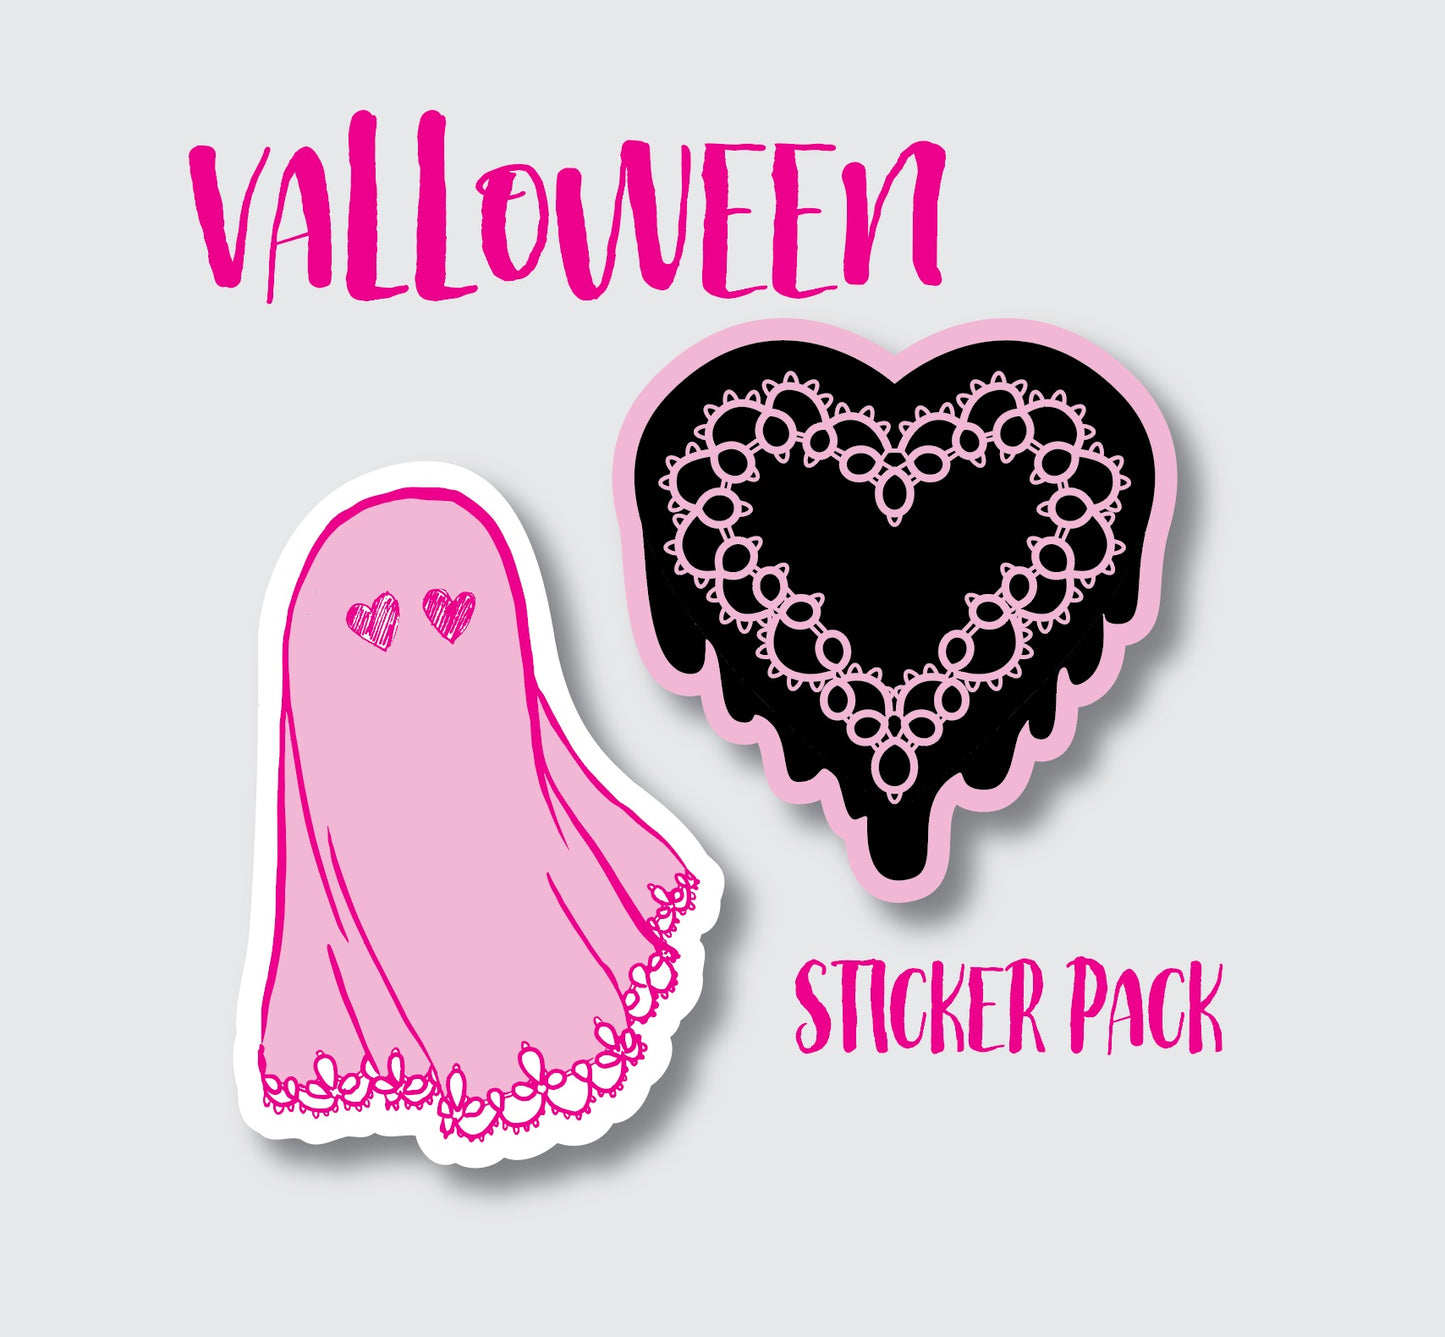 Valloween Sticker Pack